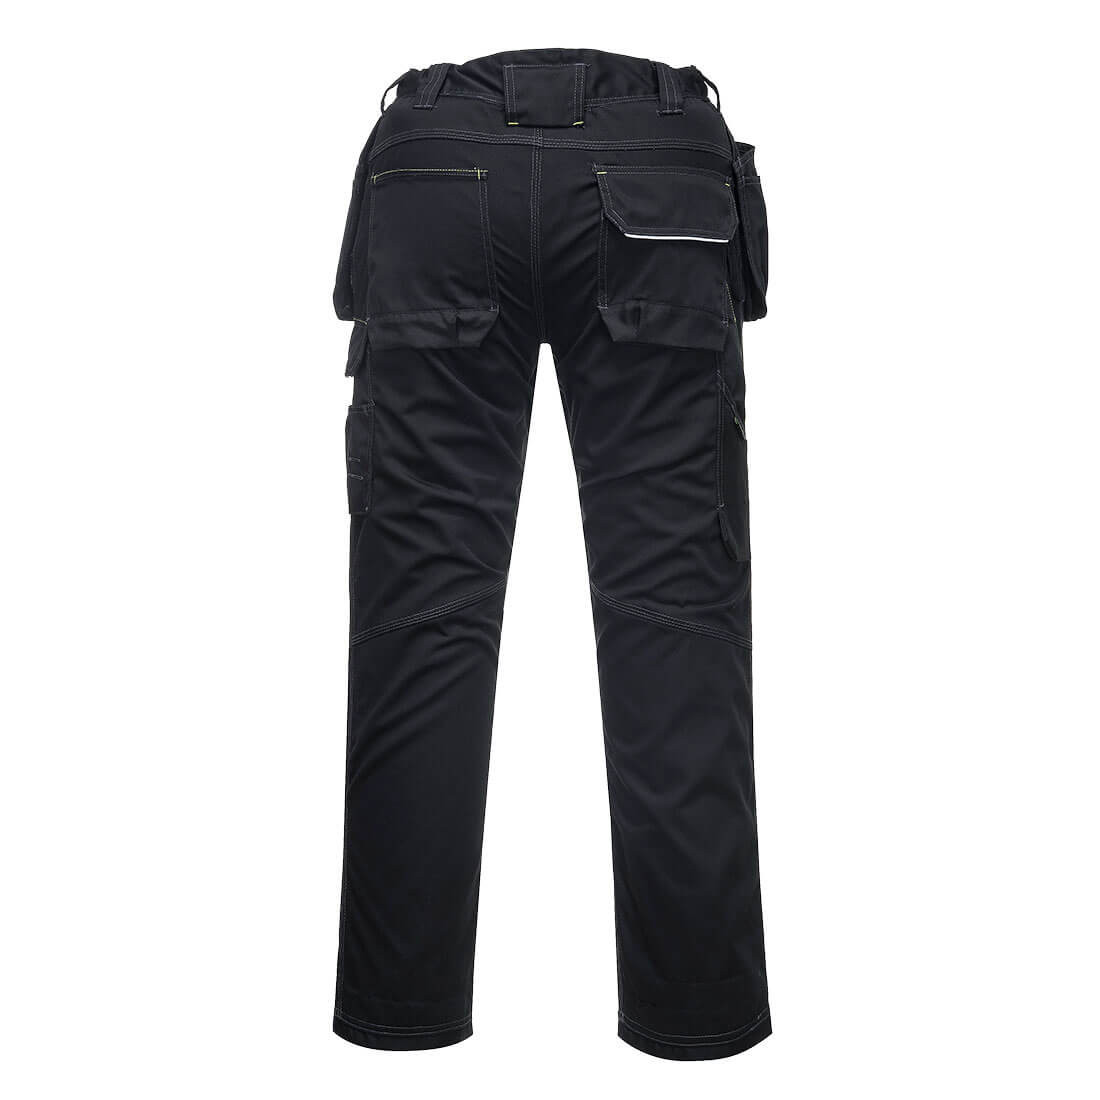 Pantalones PW3 Lined Winter Holster - Ropa de protección